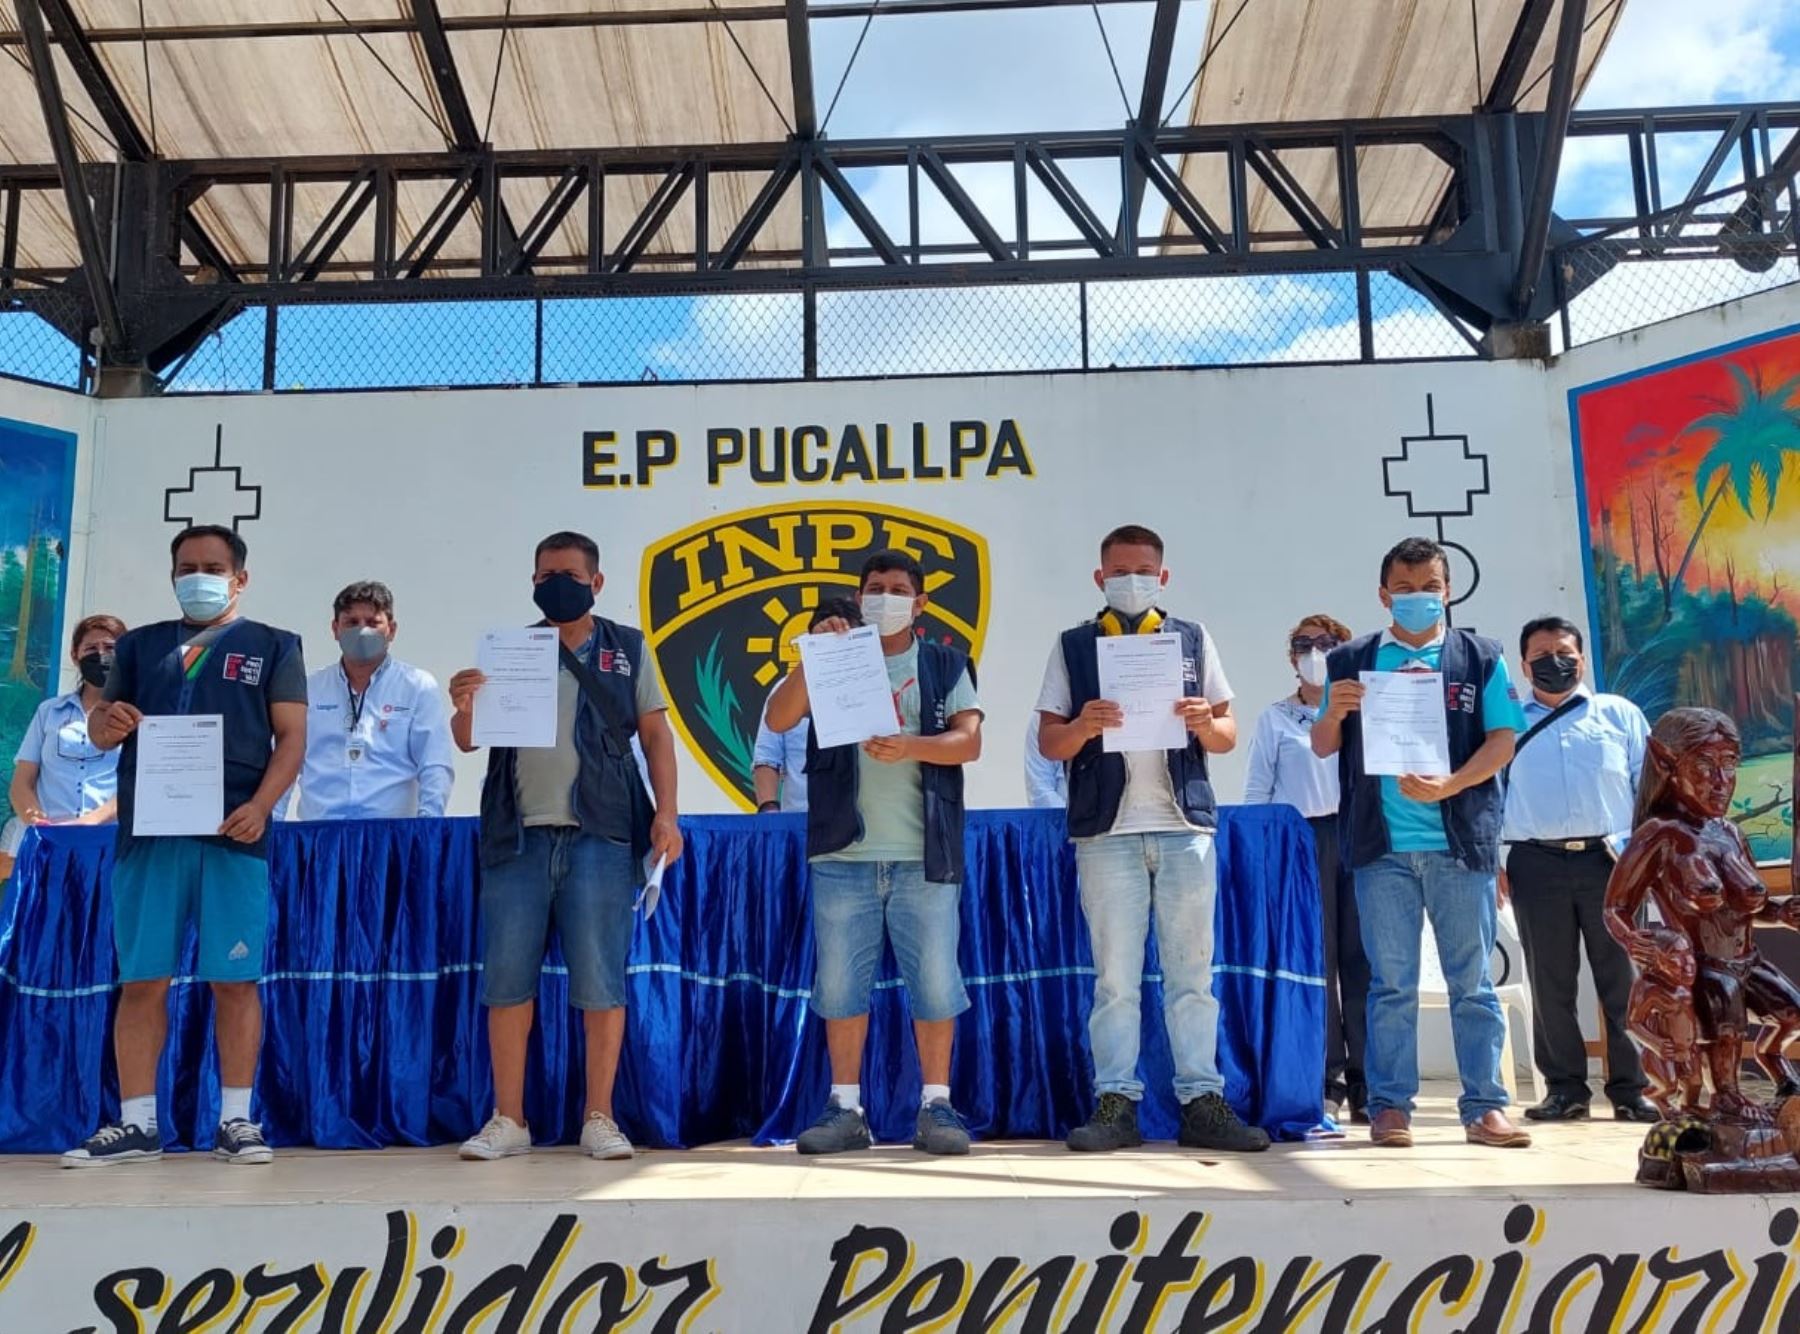 El CITEForestal Pucallpa certificó a 61 internos del penal de Ucayali en carpintería industrial y en artesania en tallado de madera.